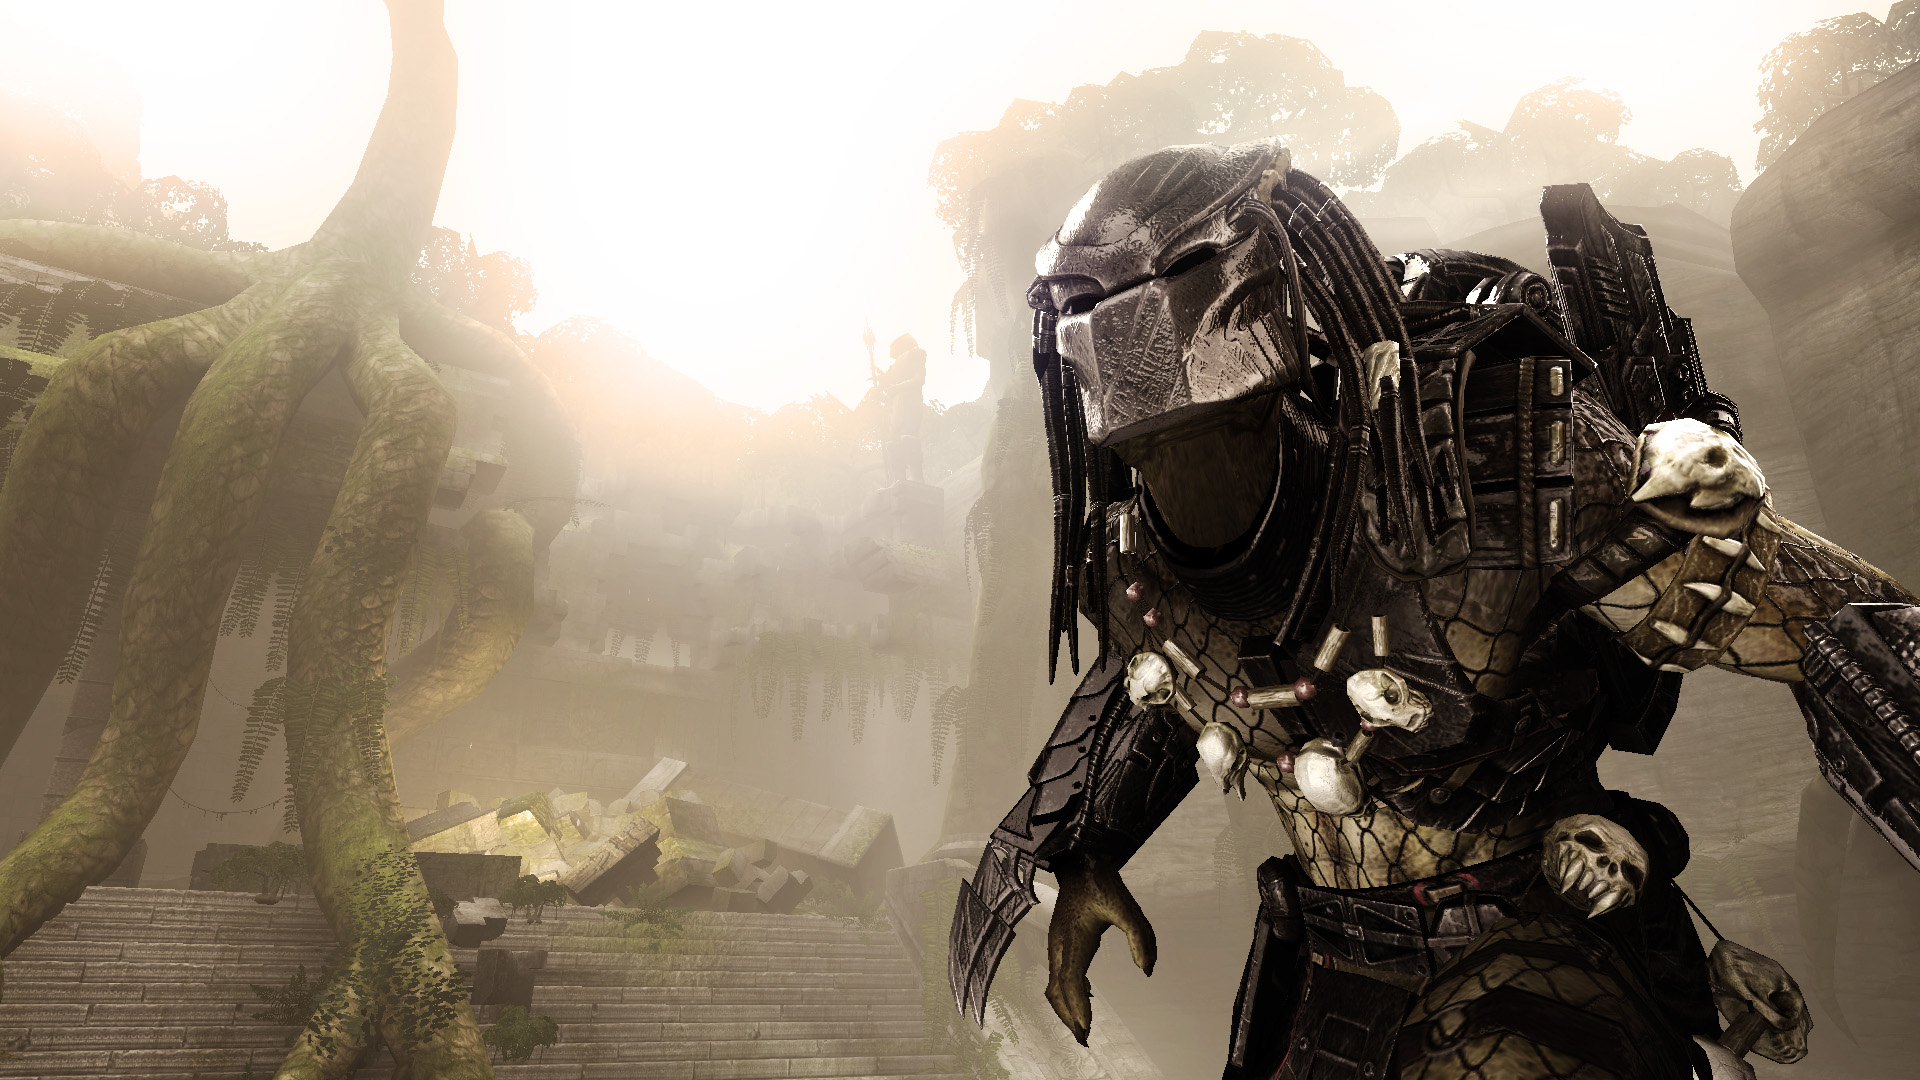 SEGA Aliens vs Predator - Xbox 360 